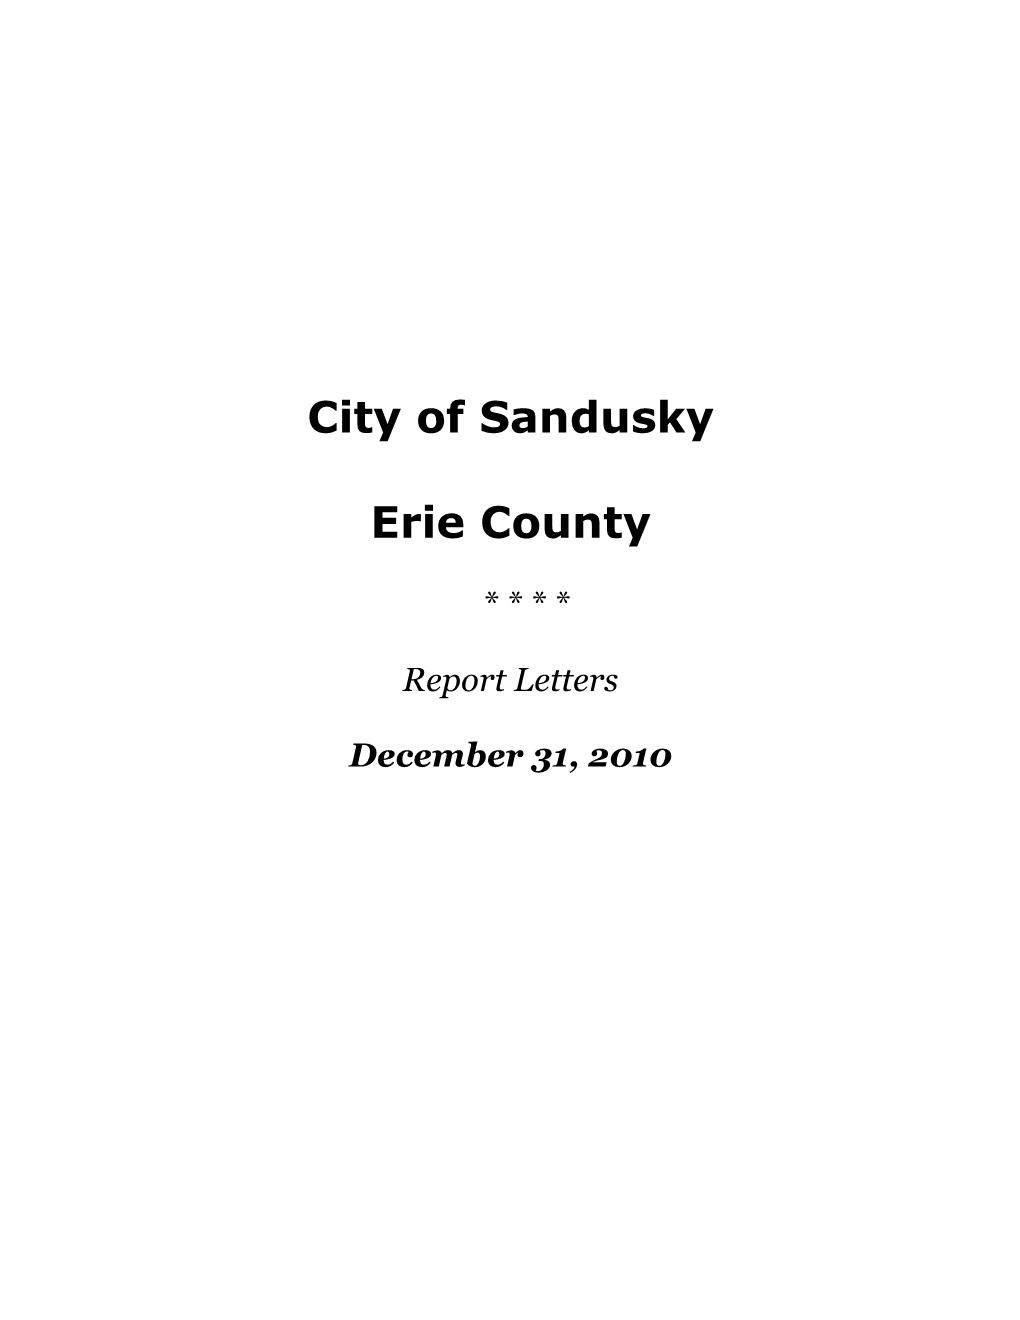 City of Sandusky Erie County, Ohio